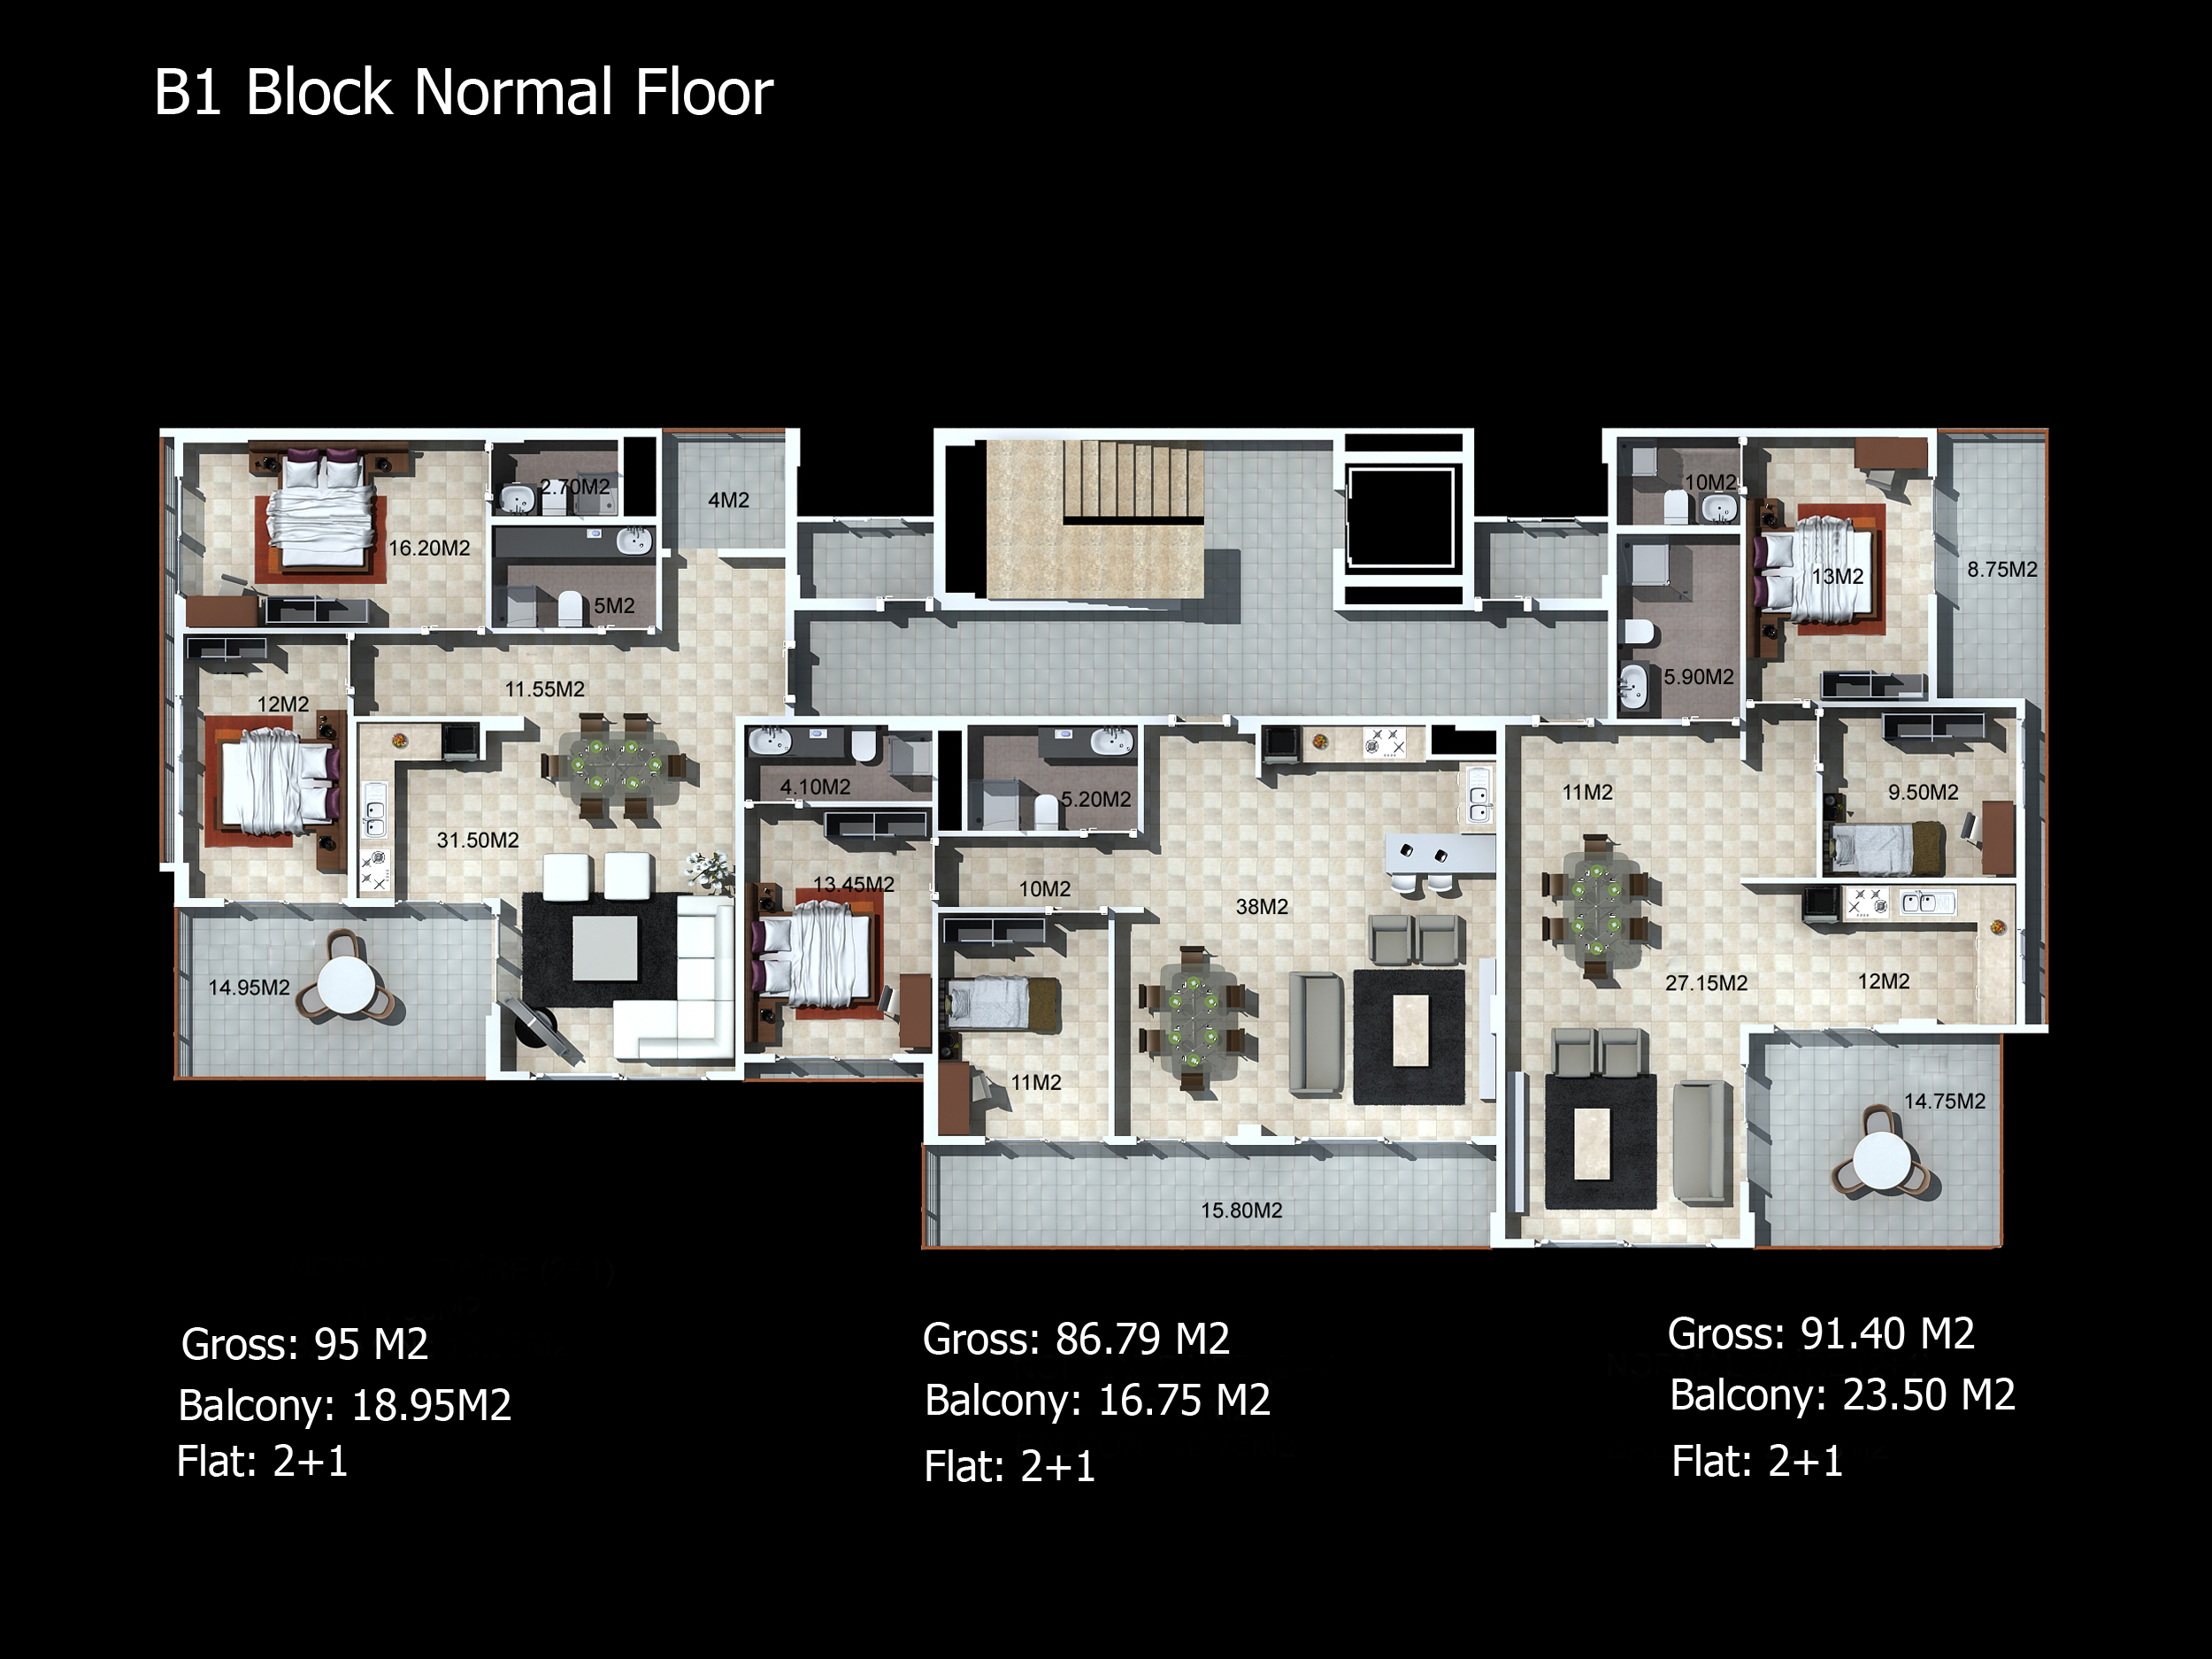 b1-block-normal-floor